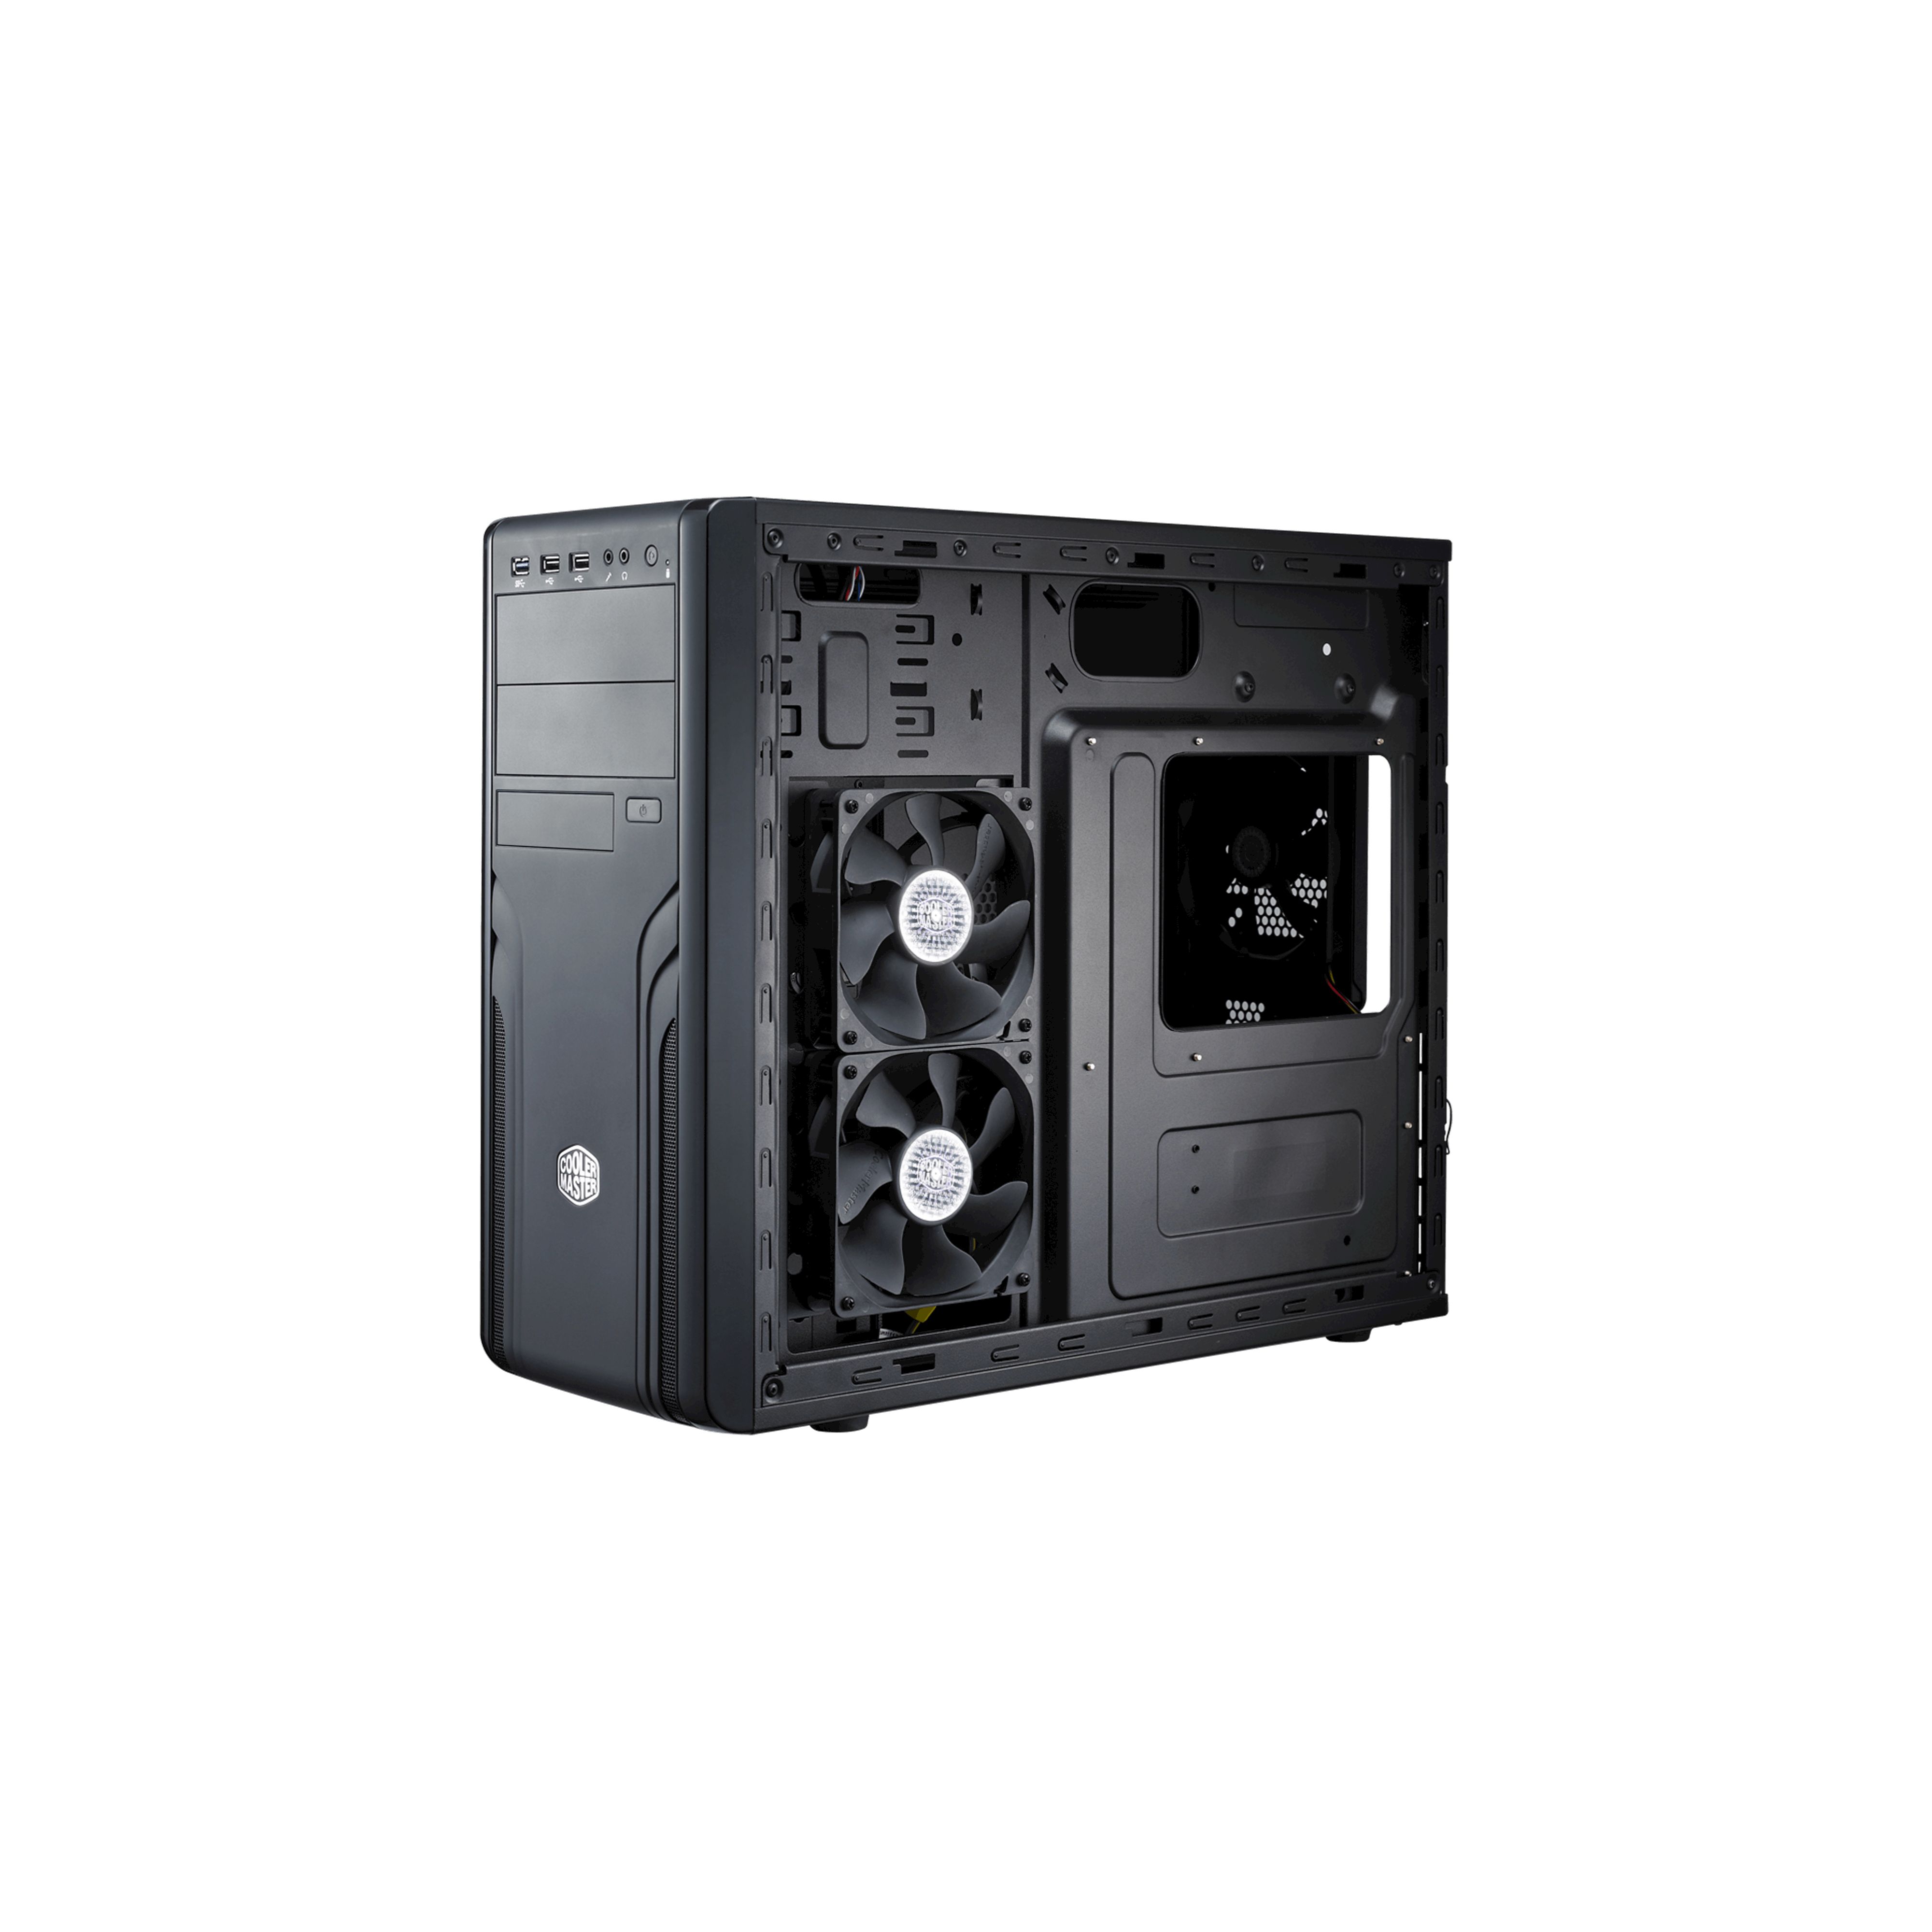 COOLMASTER FOR-500-KKN1 Cooler Master computer case CM Force 500 black ( without PSU )_1